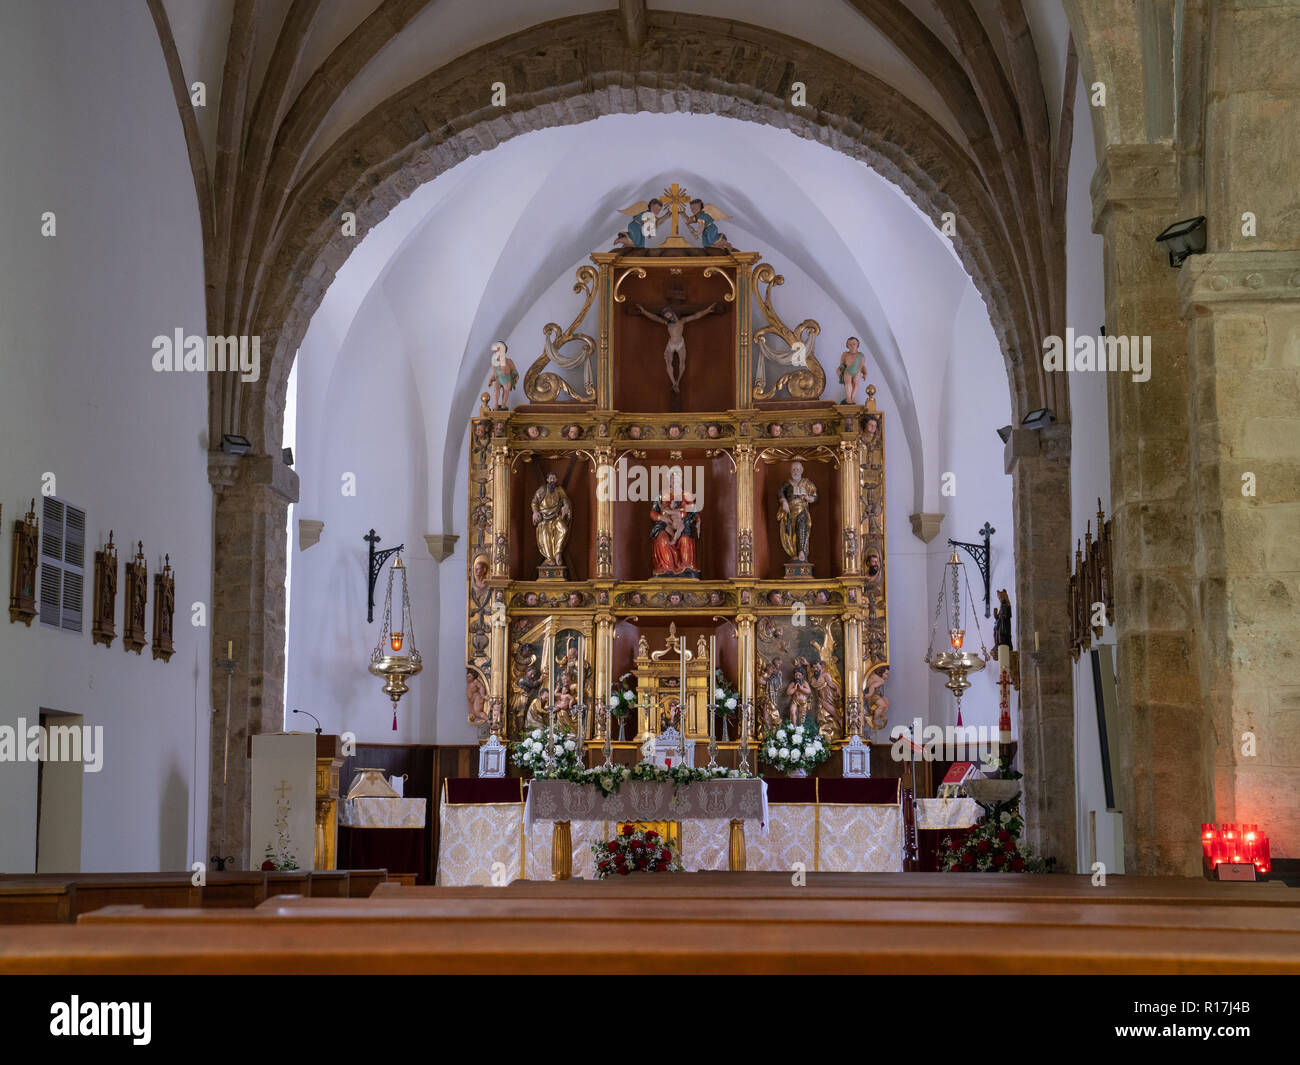 POLA DE ALLANDE, SPAIN - AUGUST 22, 2018: View into the Iglesia de San Andres on August 19, 2018 in Pola de Allande, Spain Stock Photo